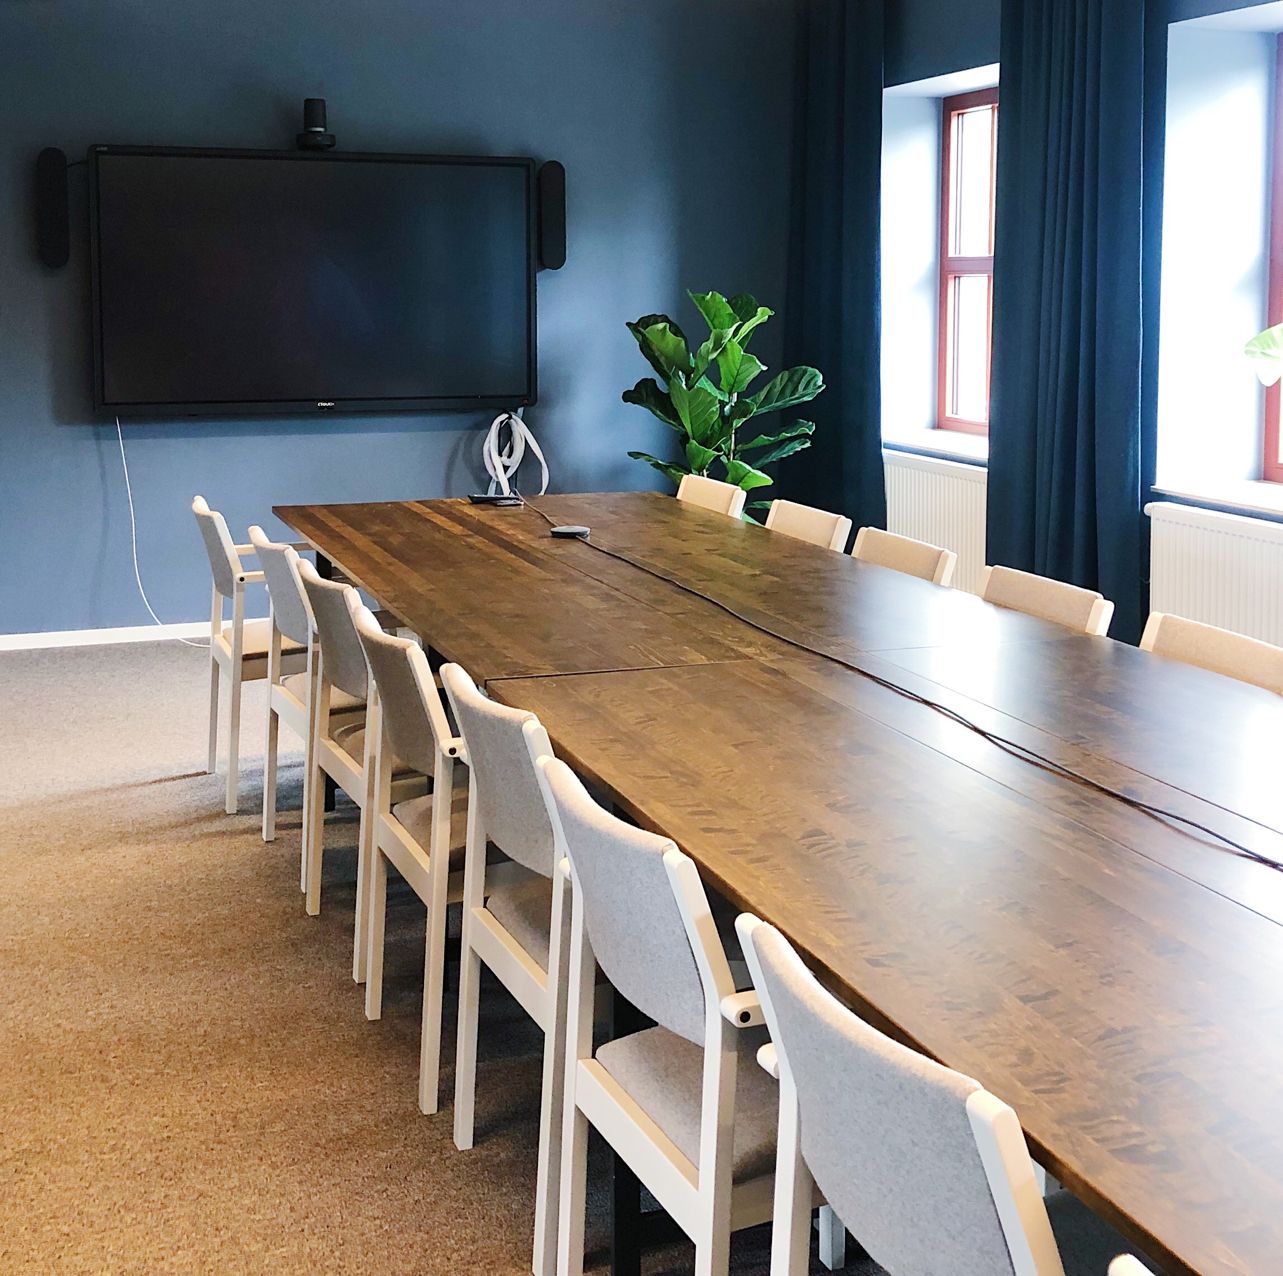 Konferensbord med renoverade stolar, rummet går i blått med blå gardiner. På väggen sitter en tv